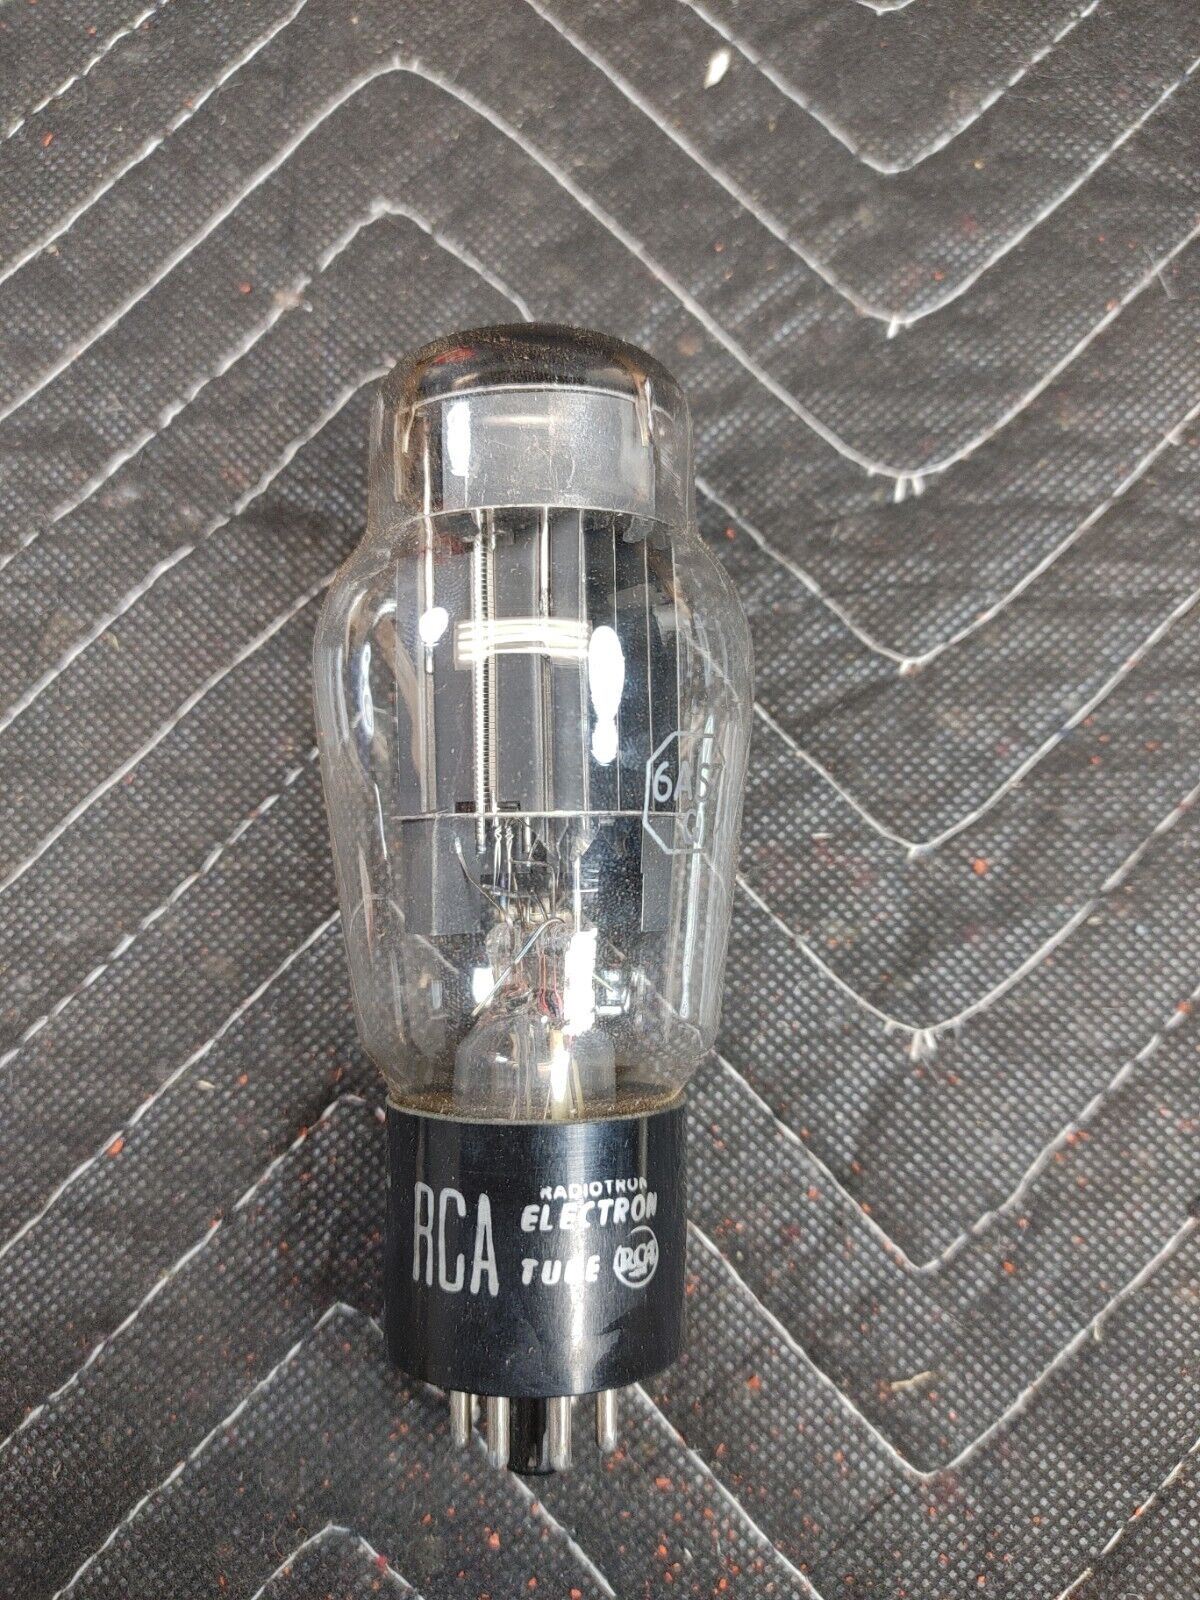 NOS NIB RCA 6AS7G Vacuum Tube 1950